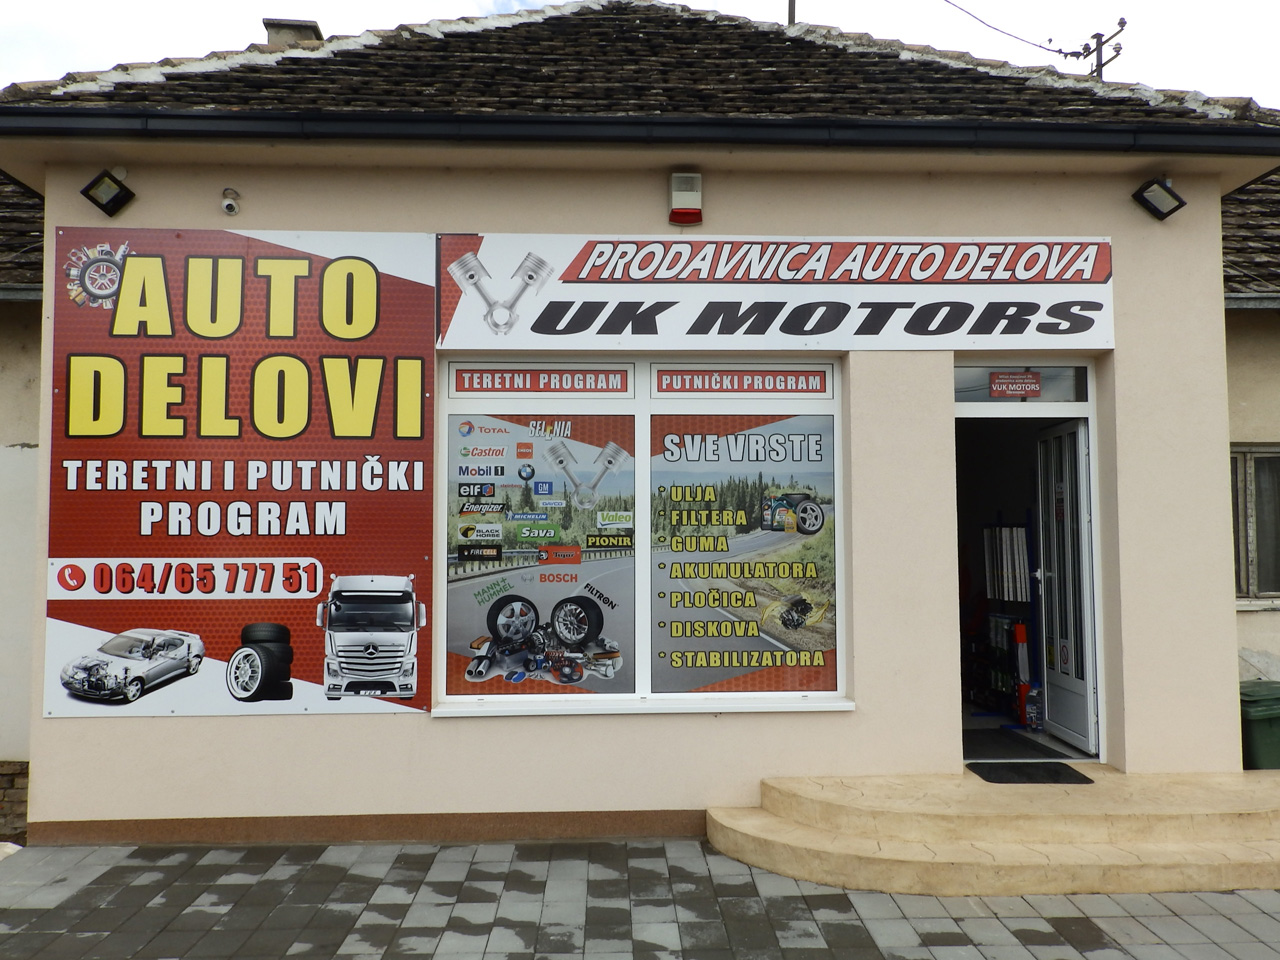 CAR PARTS VUK MOTORS Replacement parts Belgrade - Photo 1